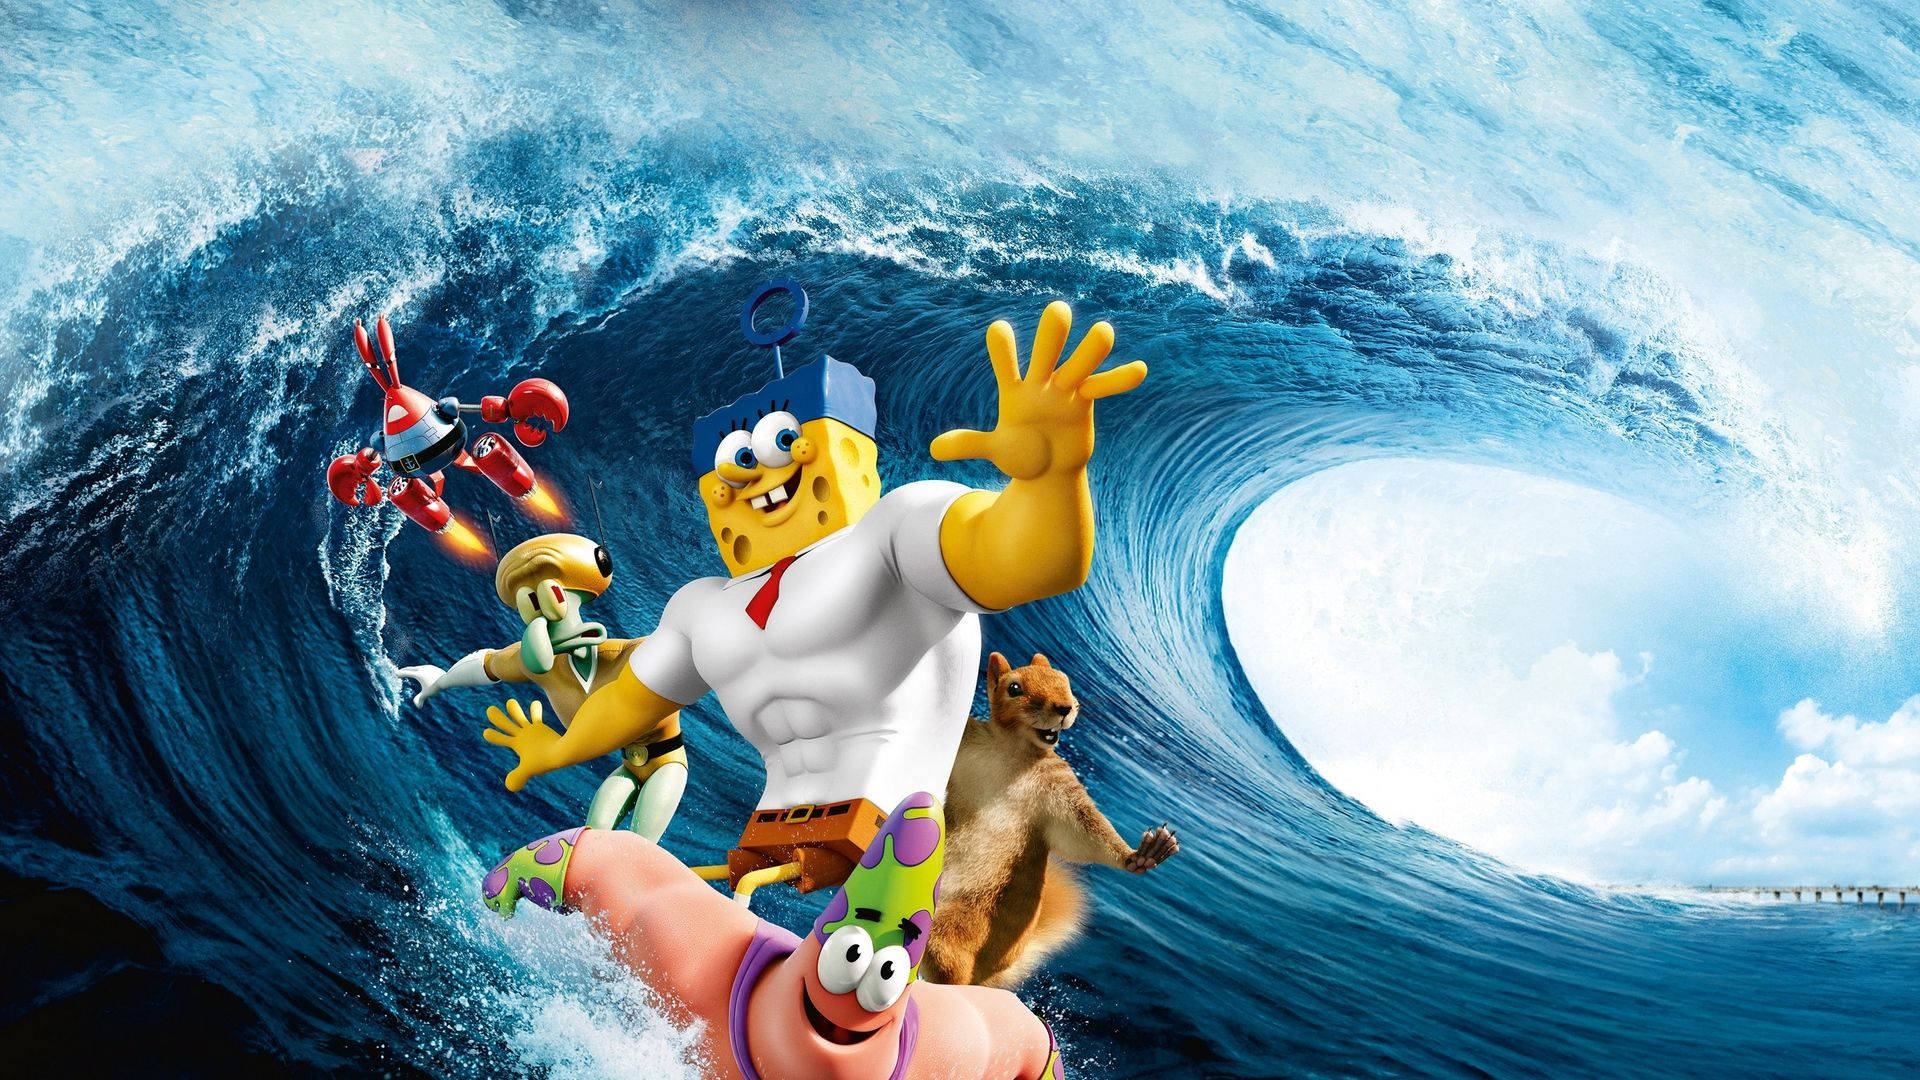 Herrkrabs, Spongebob - Der Film Wallpaper